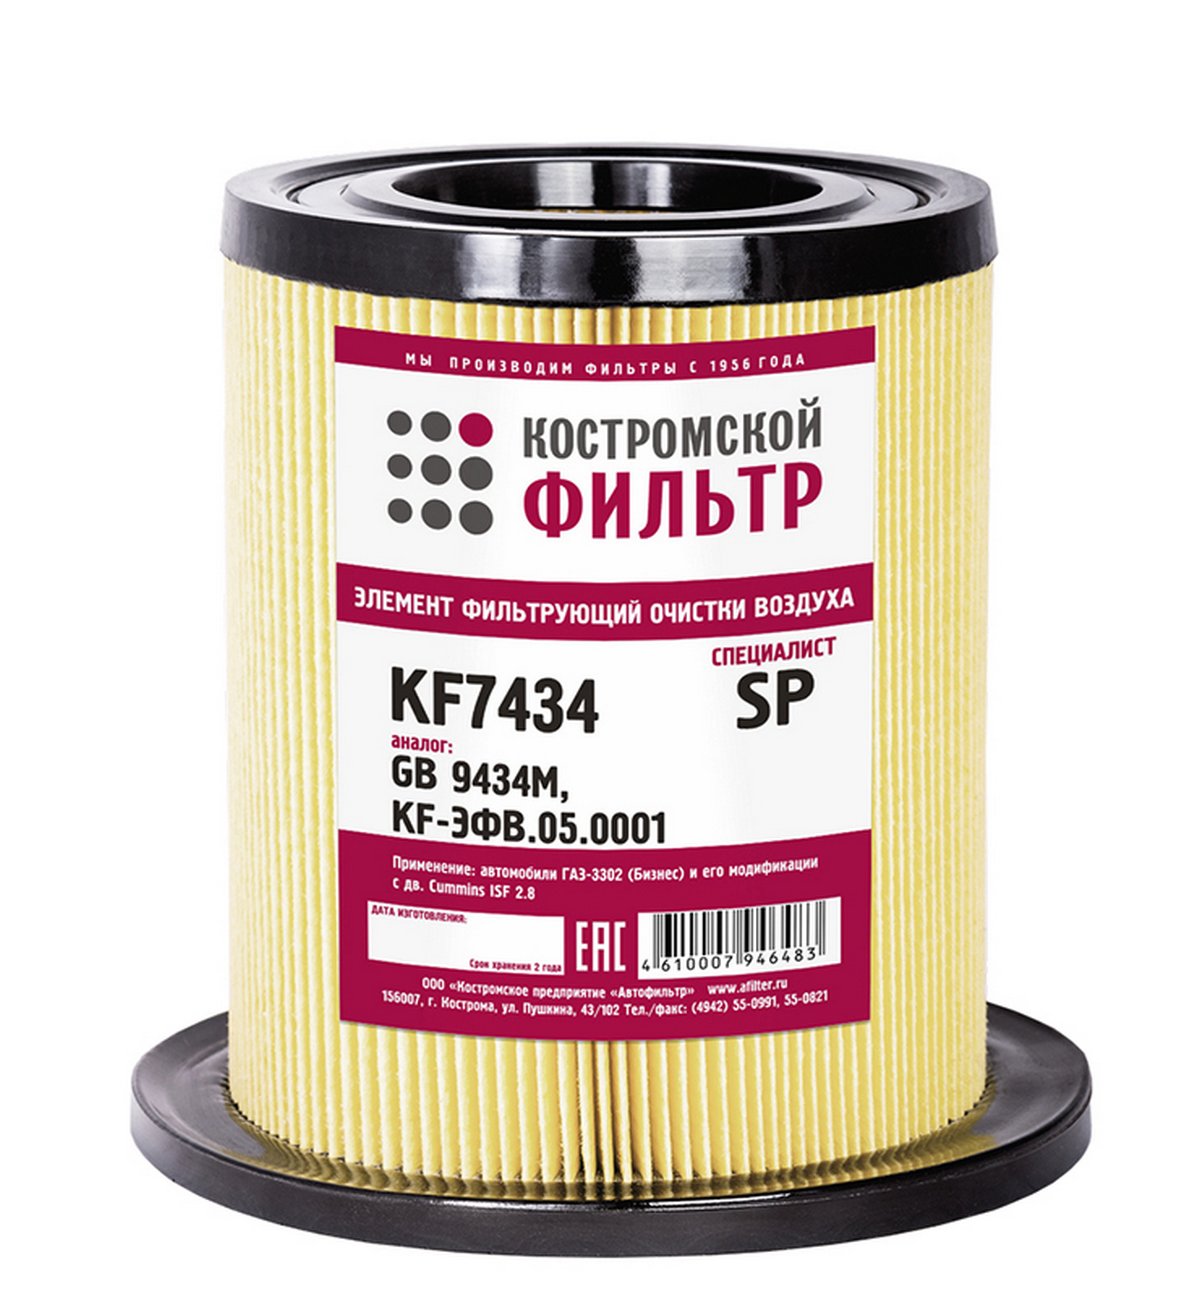 KF7434 SP Элемент фильтрующий очистки воздуха KF7434 SP (GB9434M, KF-ЭФВ.05.0001) Специалист  Костромской фильтр